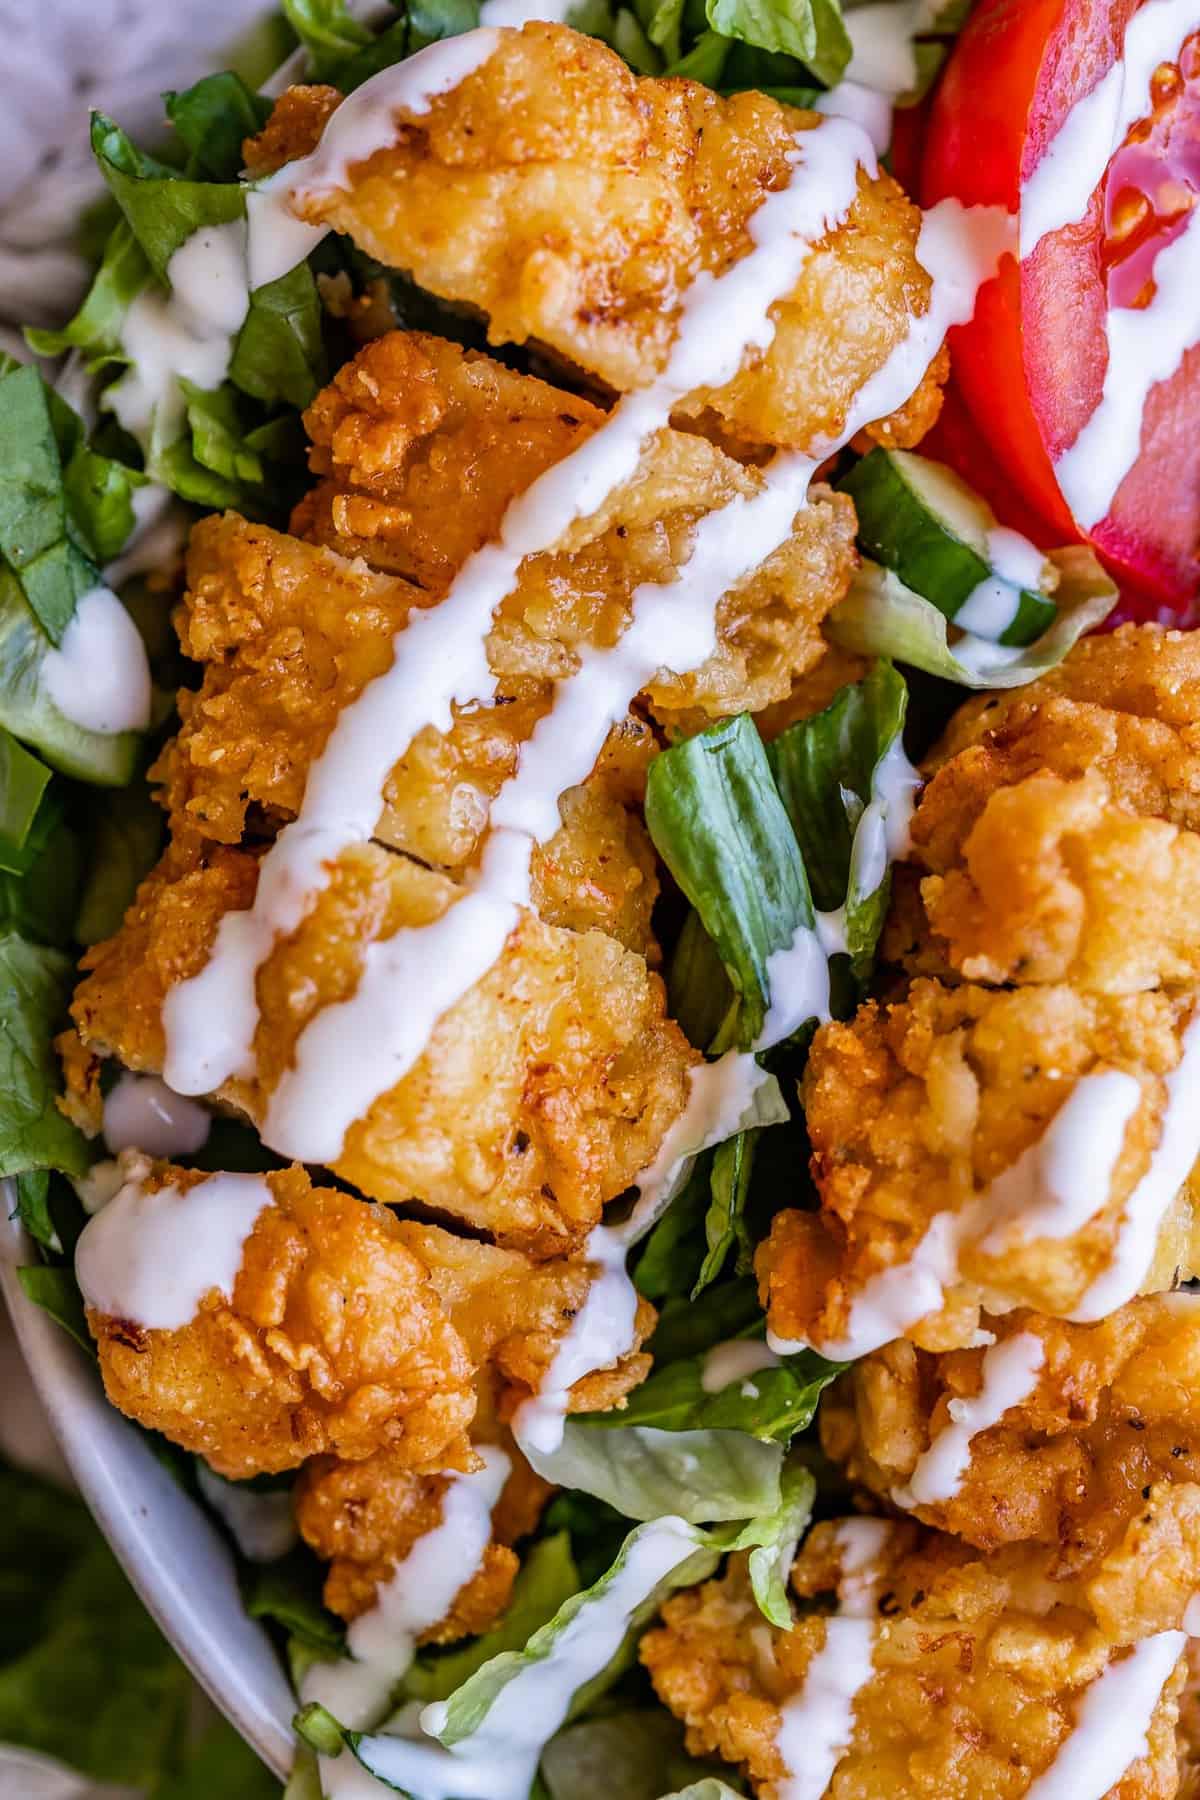 fried chicken salad dressing - Masako Durham